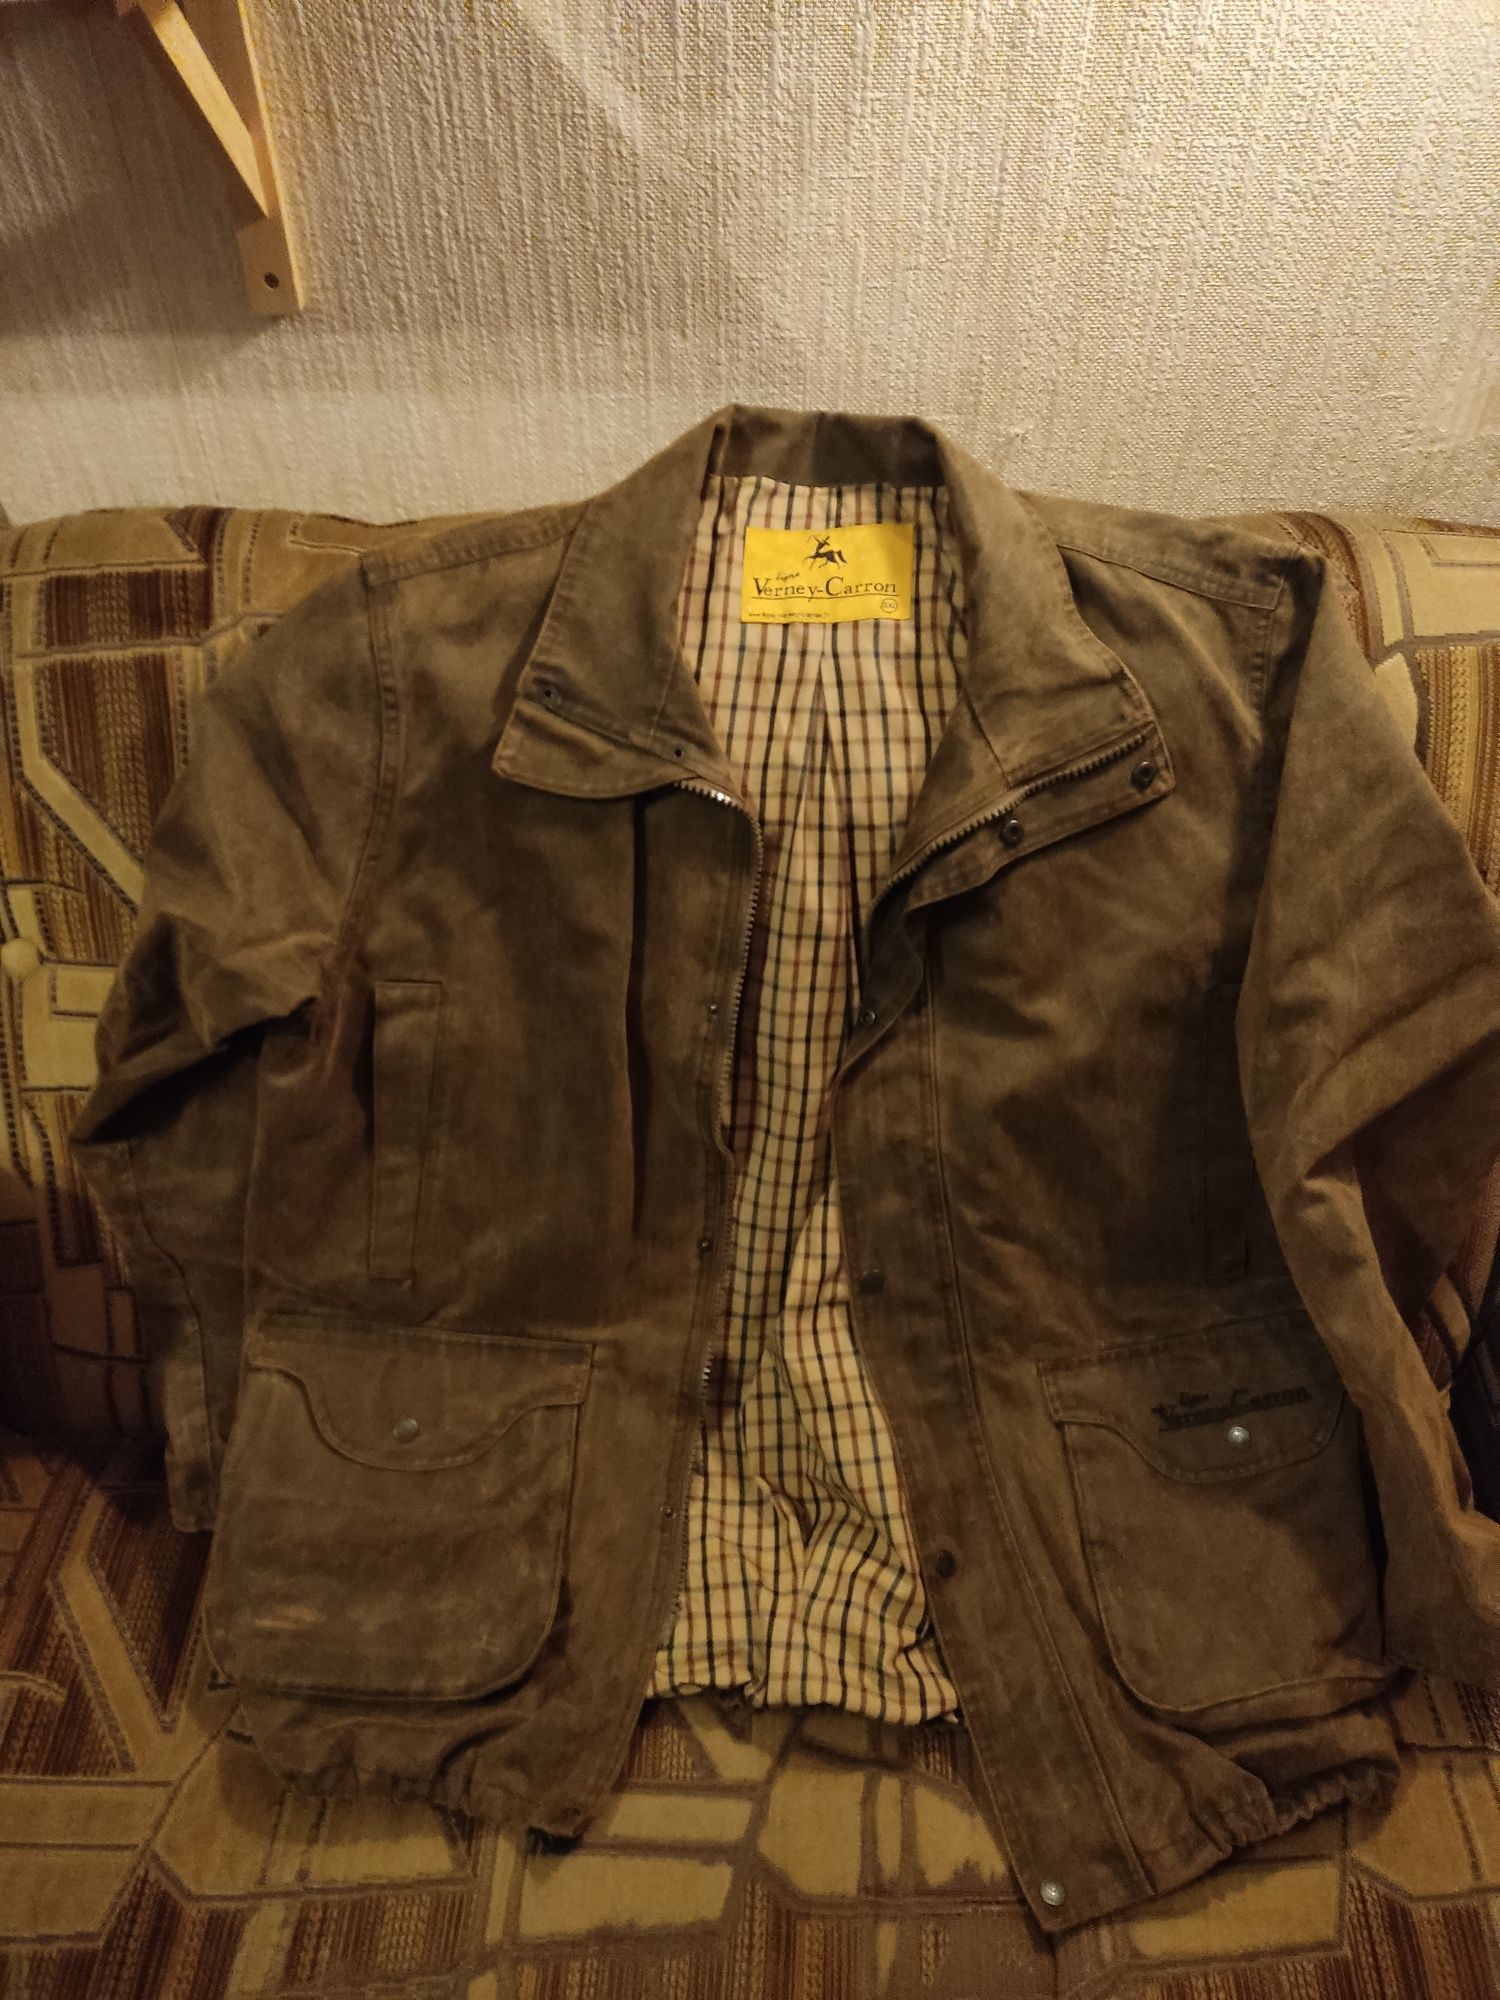 Продается демисезонная охотничья куртка Verney Carron 56р.